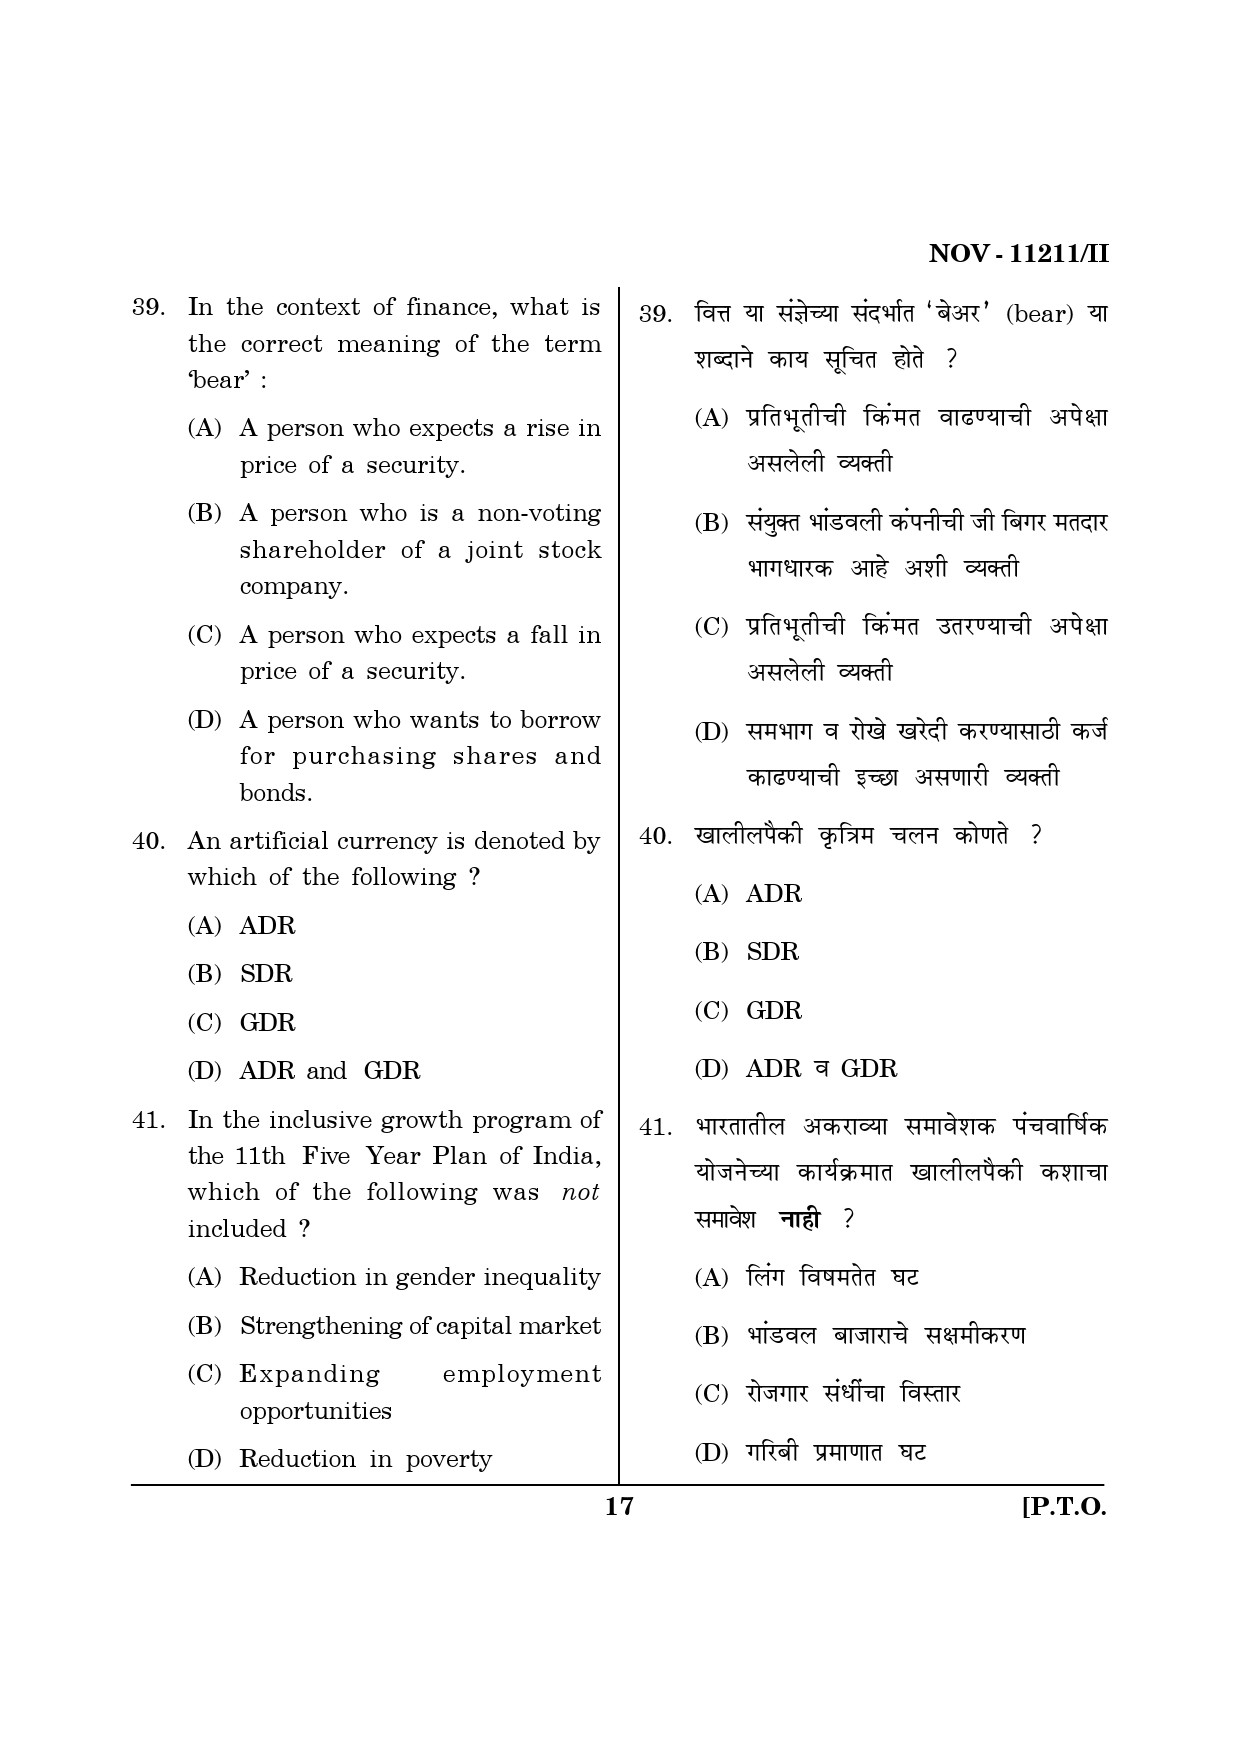 Maharashtra SET Economics Question Paper II November 2011 17